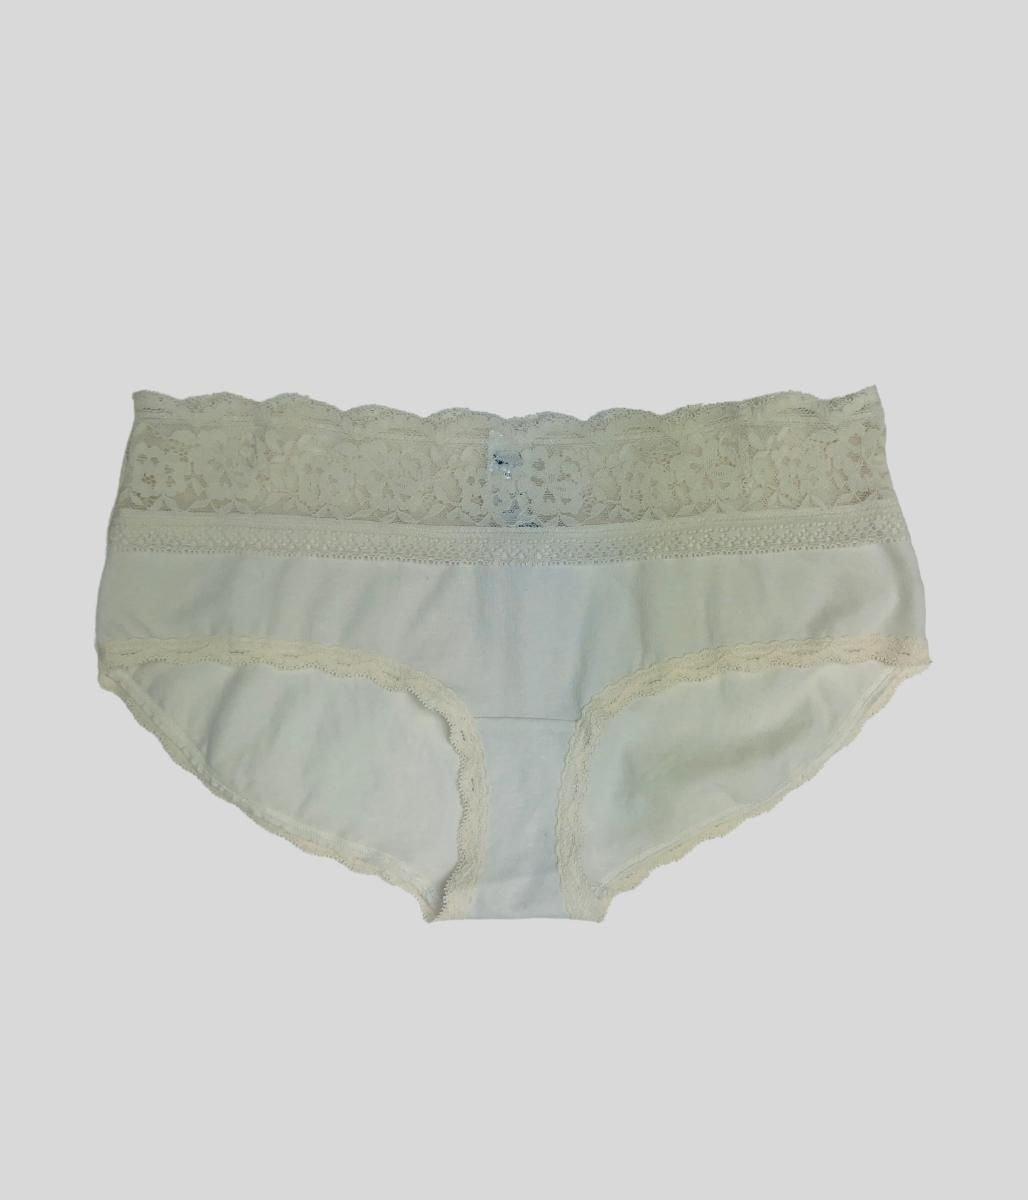 Ivory Lace Trim Shorts Briefs  Size 12